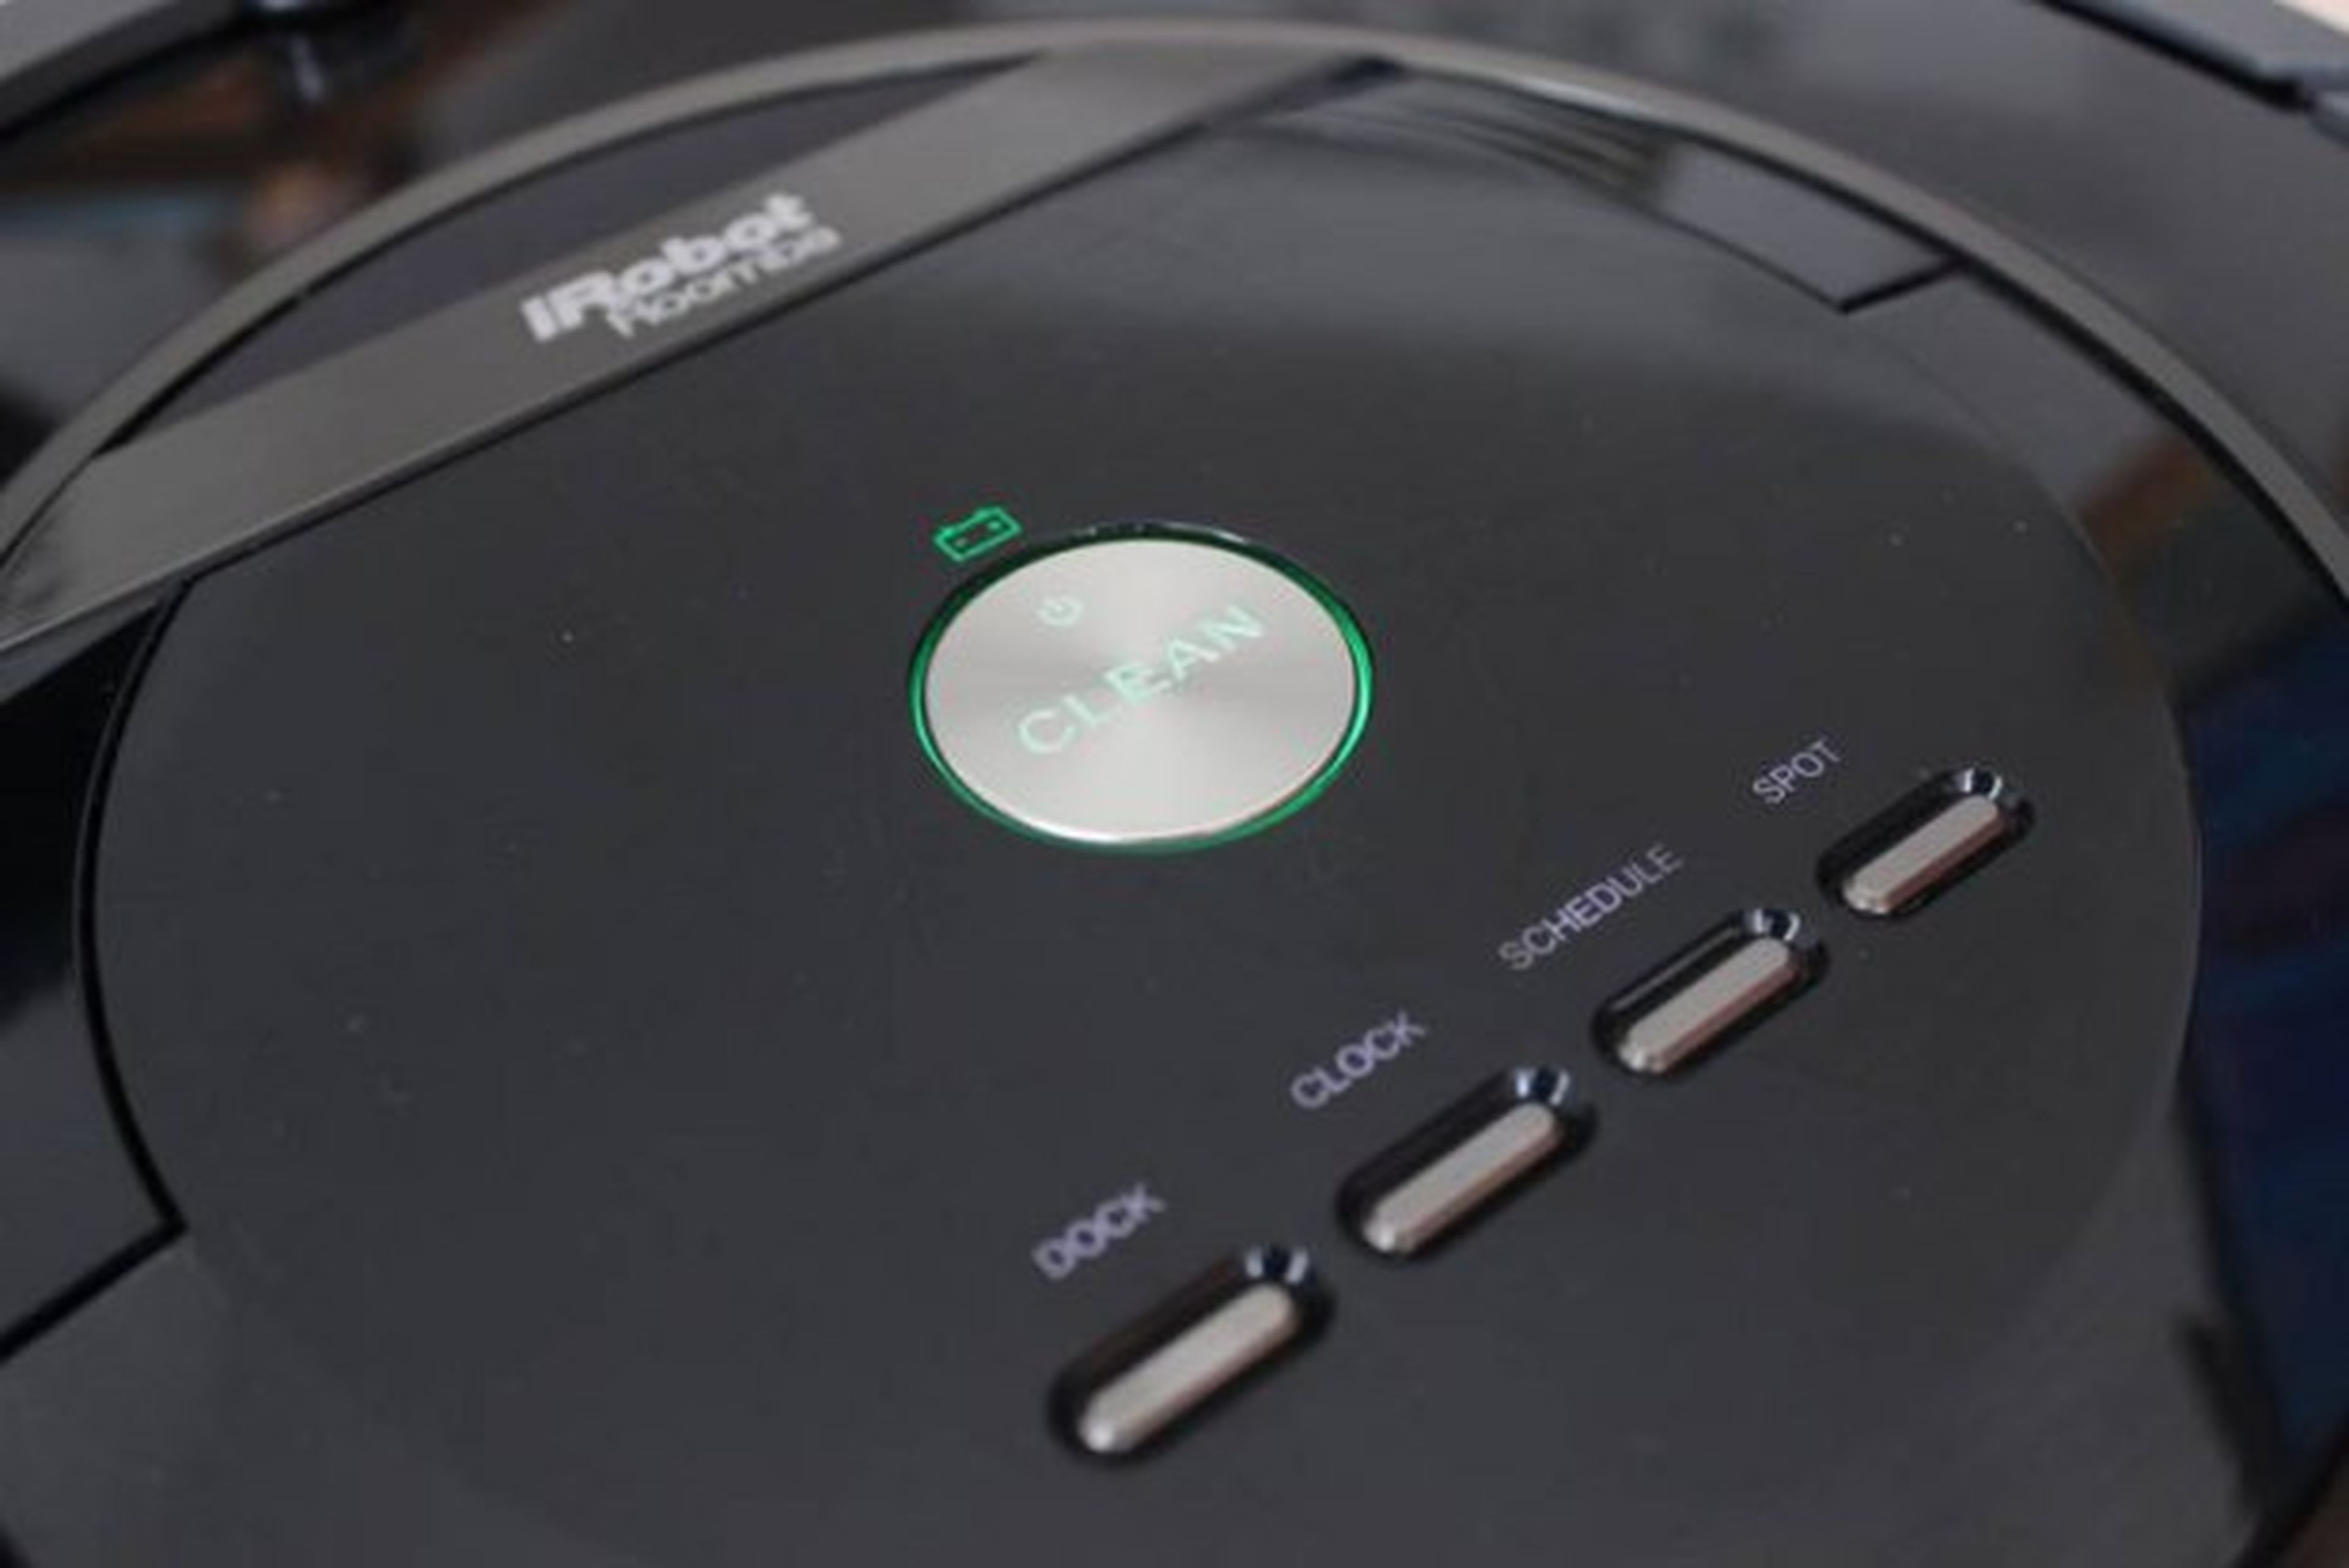 Botón de activación del Roomba 880